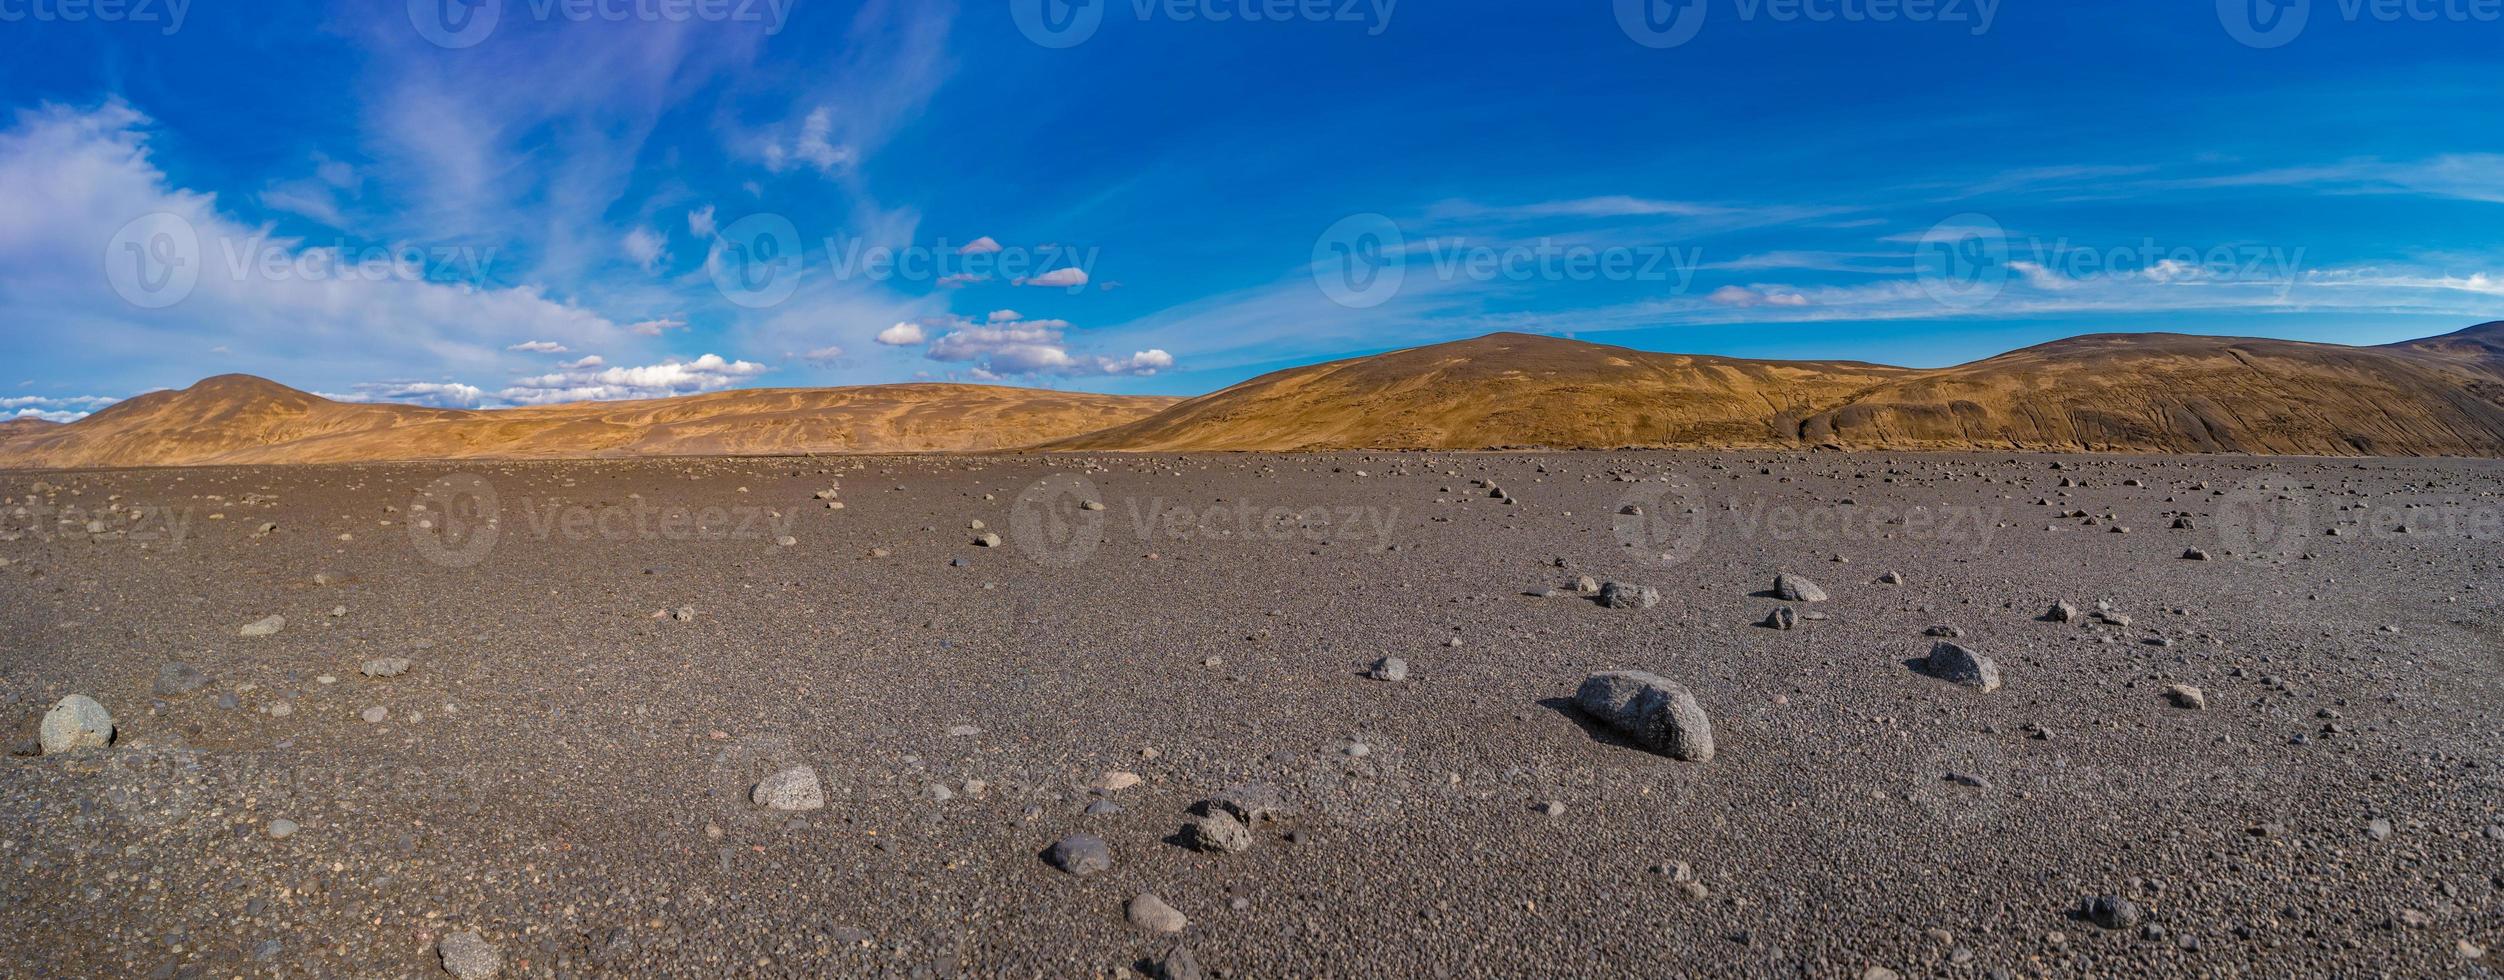 Panoramablick über die isländische Landschaft der tödlichsten Vulkanwüste im Hochland, mit Steinen und Felsen, die von Vulkanausbrüchen geschleudert wurden, und Wanderung entlang der Offroad, Island, Sommer, blauer Himmel. foto